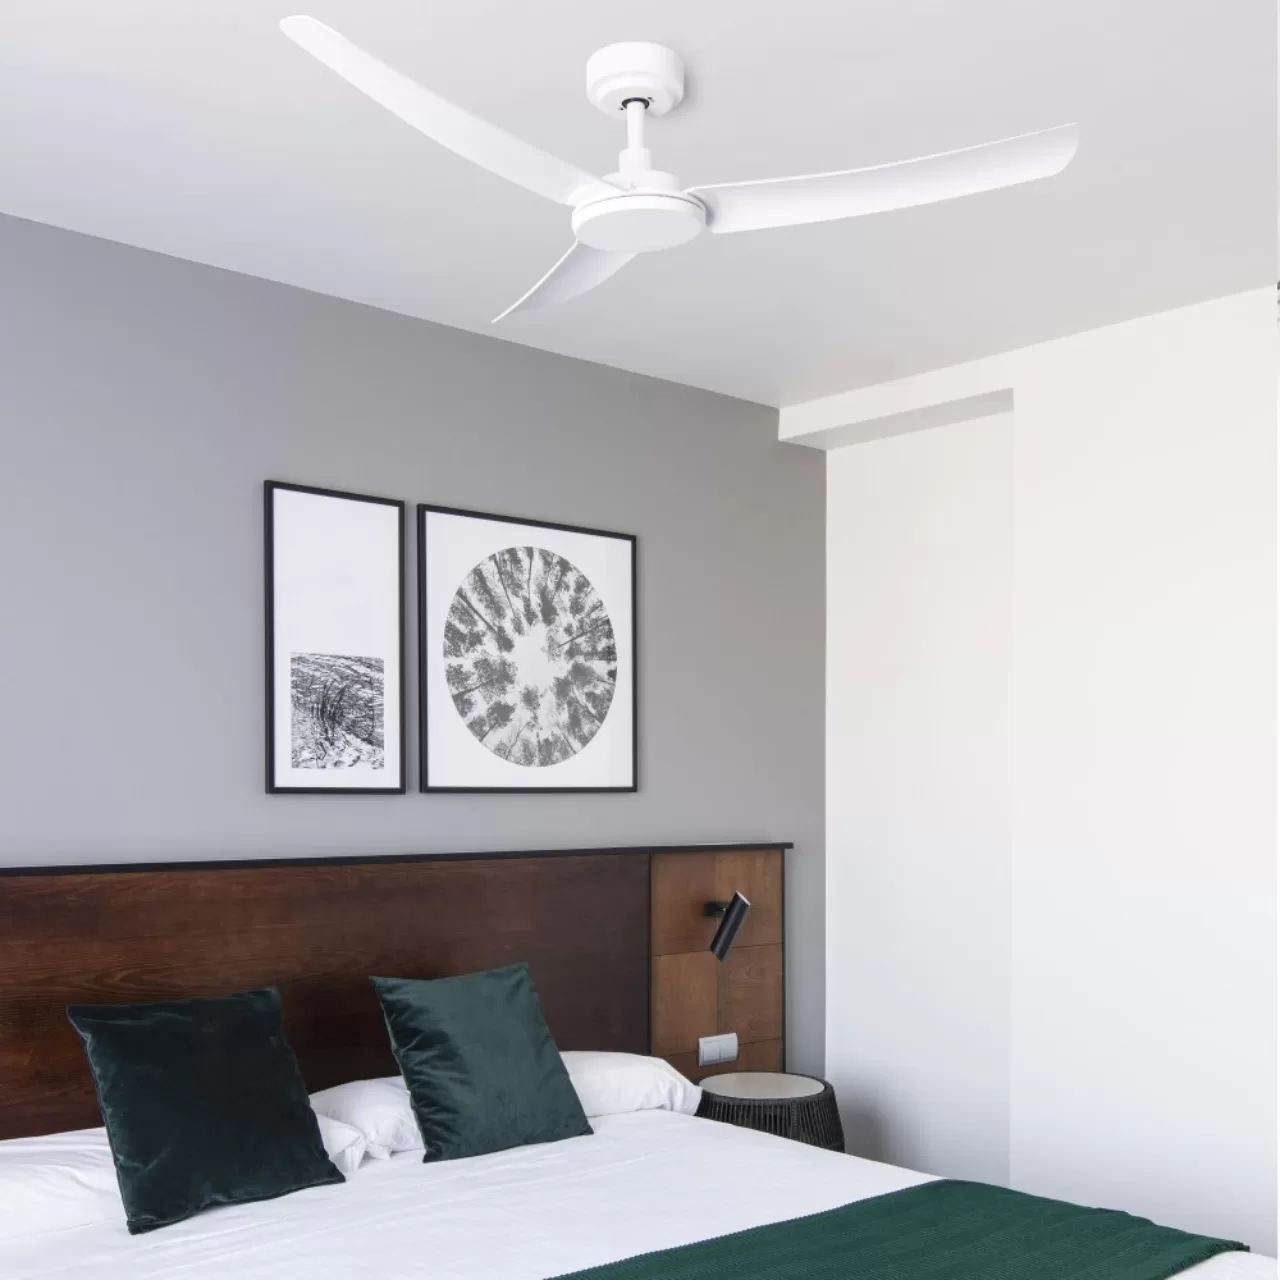 Kako stropni ventilatori poboljšavaju kvalitetu zraka